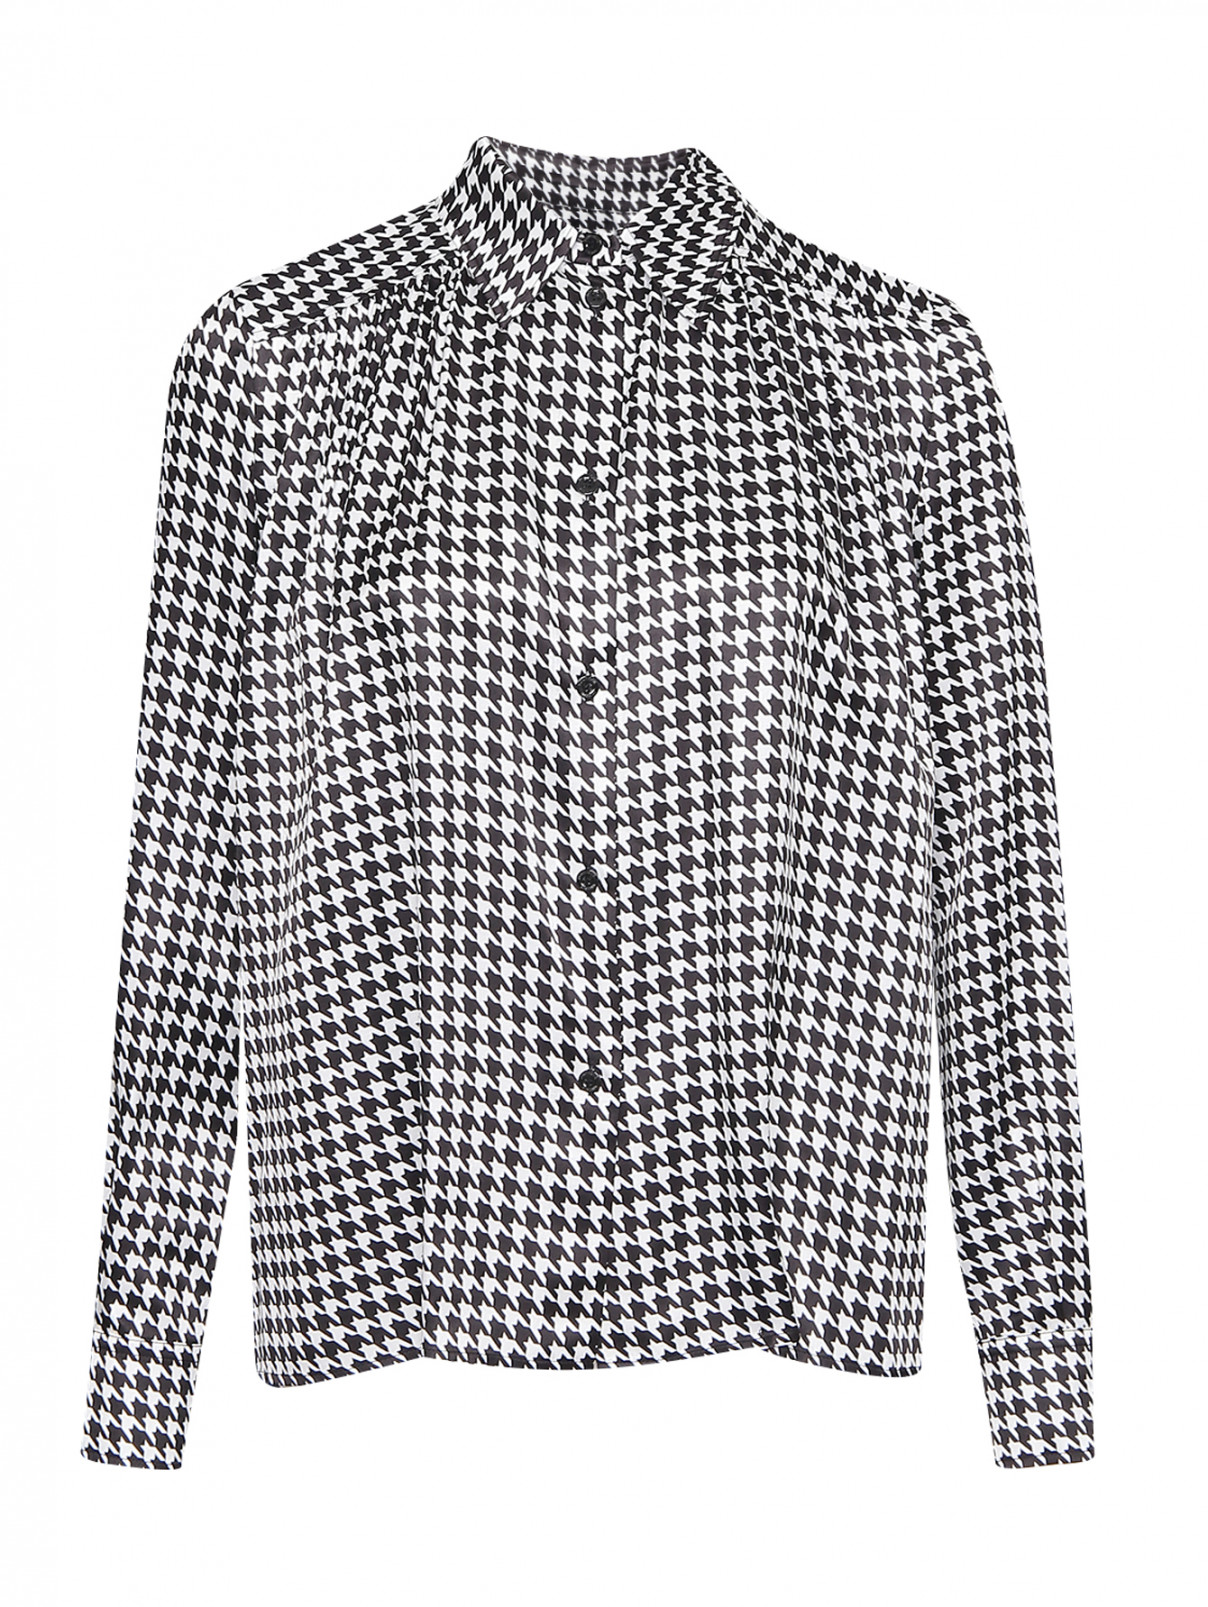 Блуза свободного кроя с узором Moschino Boutique  –  Общий вид  – Цвет:  Узор